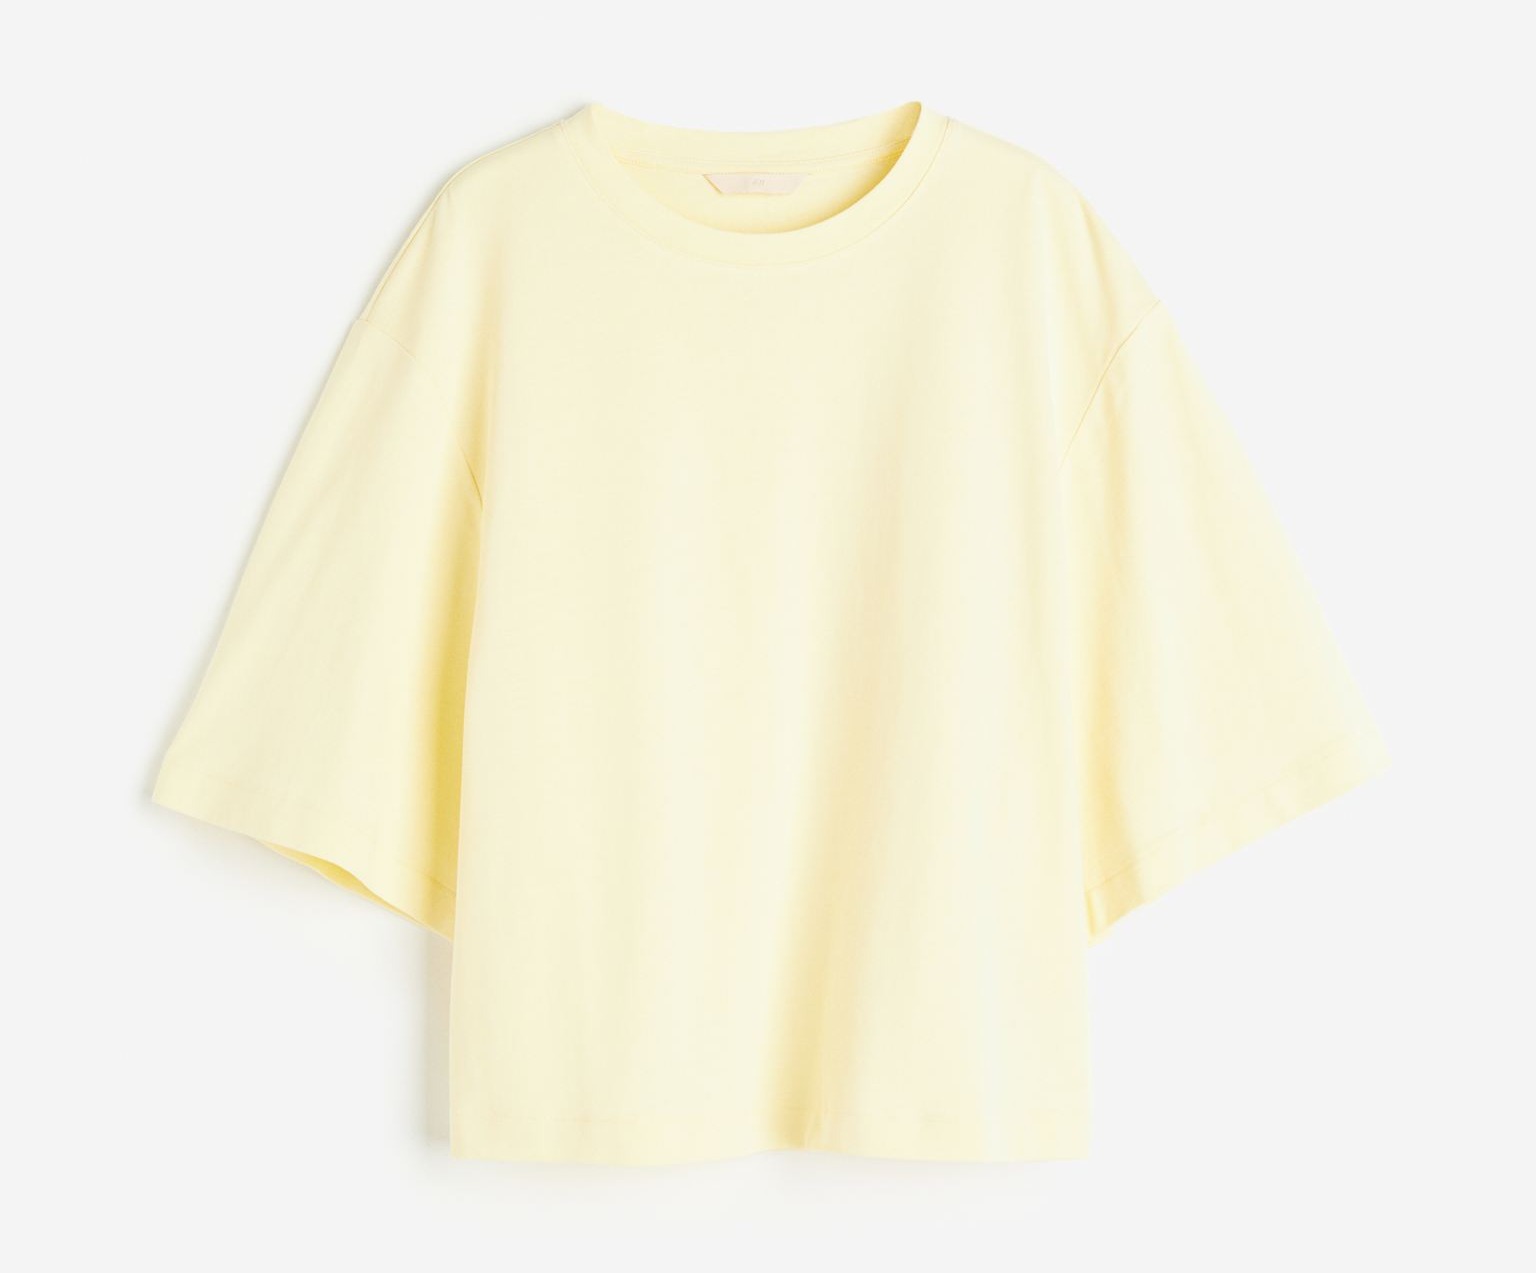 Sparen Sie 8,99 £ bei diesem locker sitzenden Baumwoll-T-Shirt bei H&M